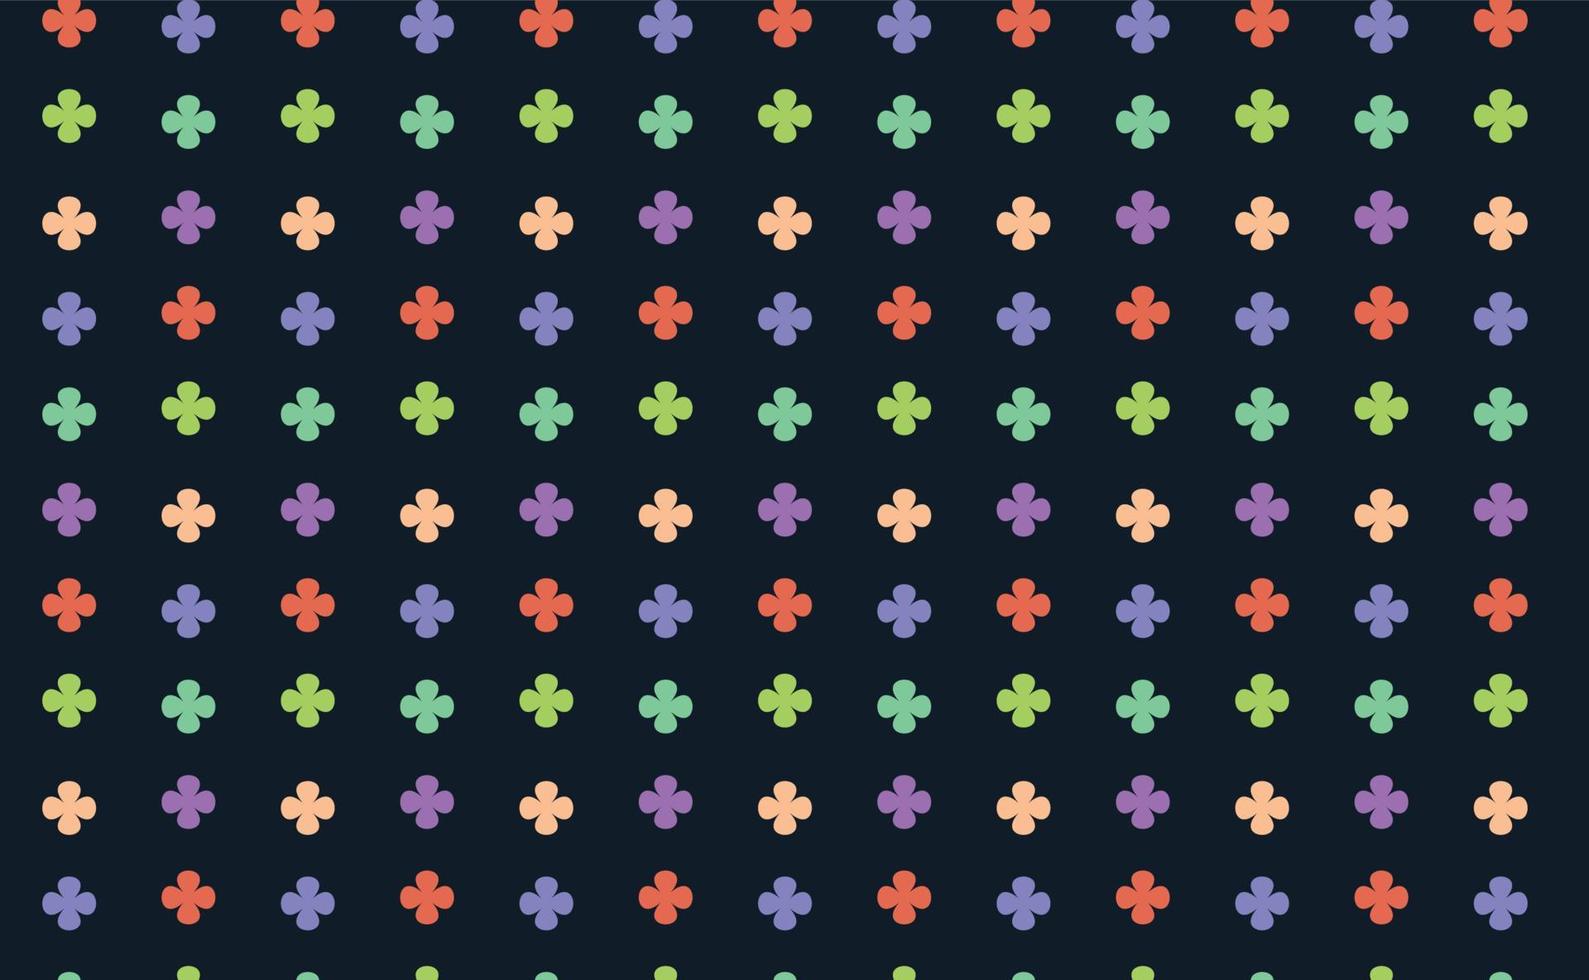 patrón de hojas florales patrón de papel tapiz patrón de gráficos ilustración de fondo, vector de diseño de fondo de patrón desvergonzado de otoño para gráficos textiles impresos